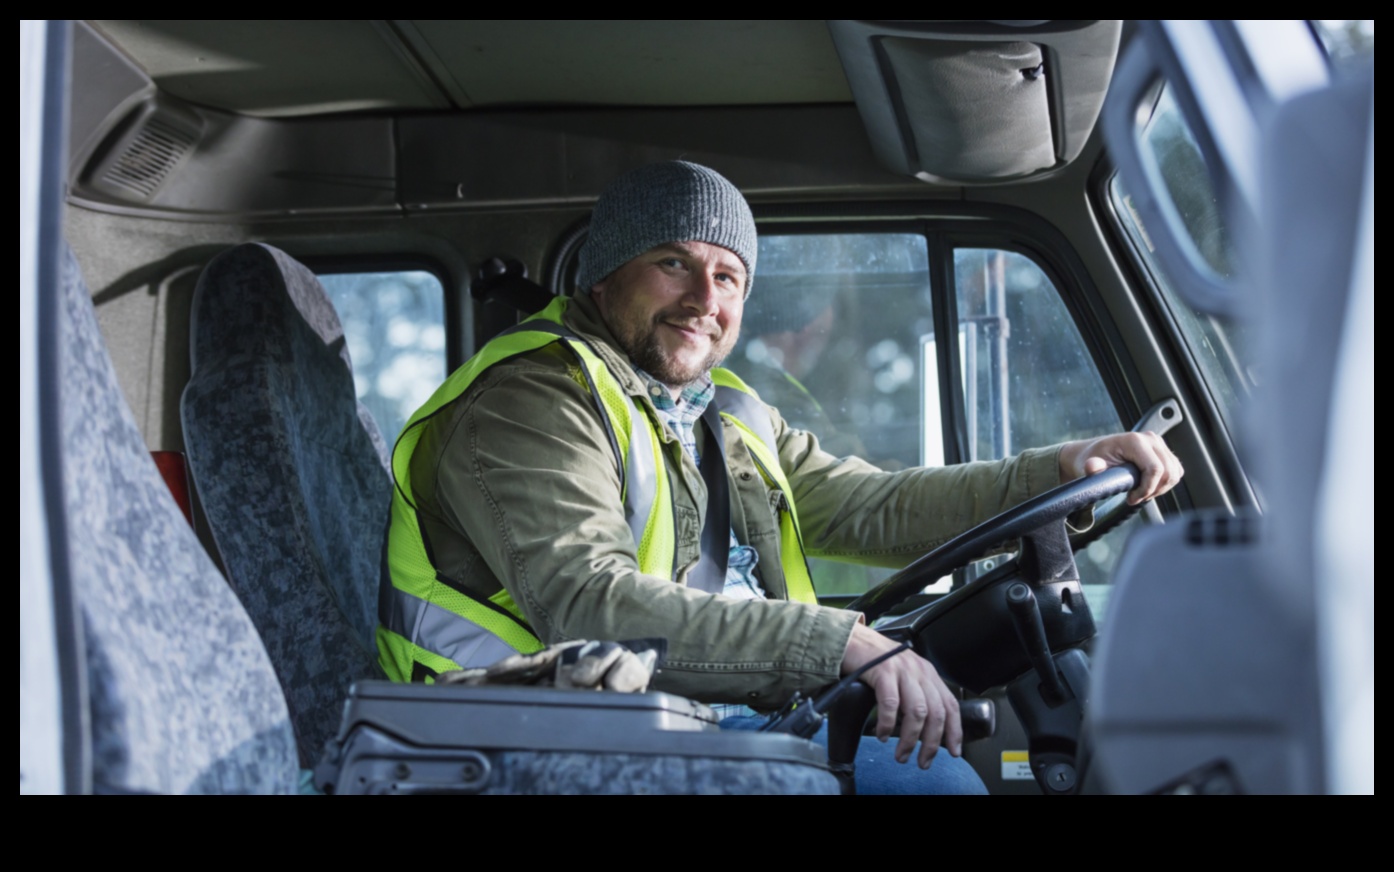 Beyond the Grind: partea personală a vieții șoferilor de camion